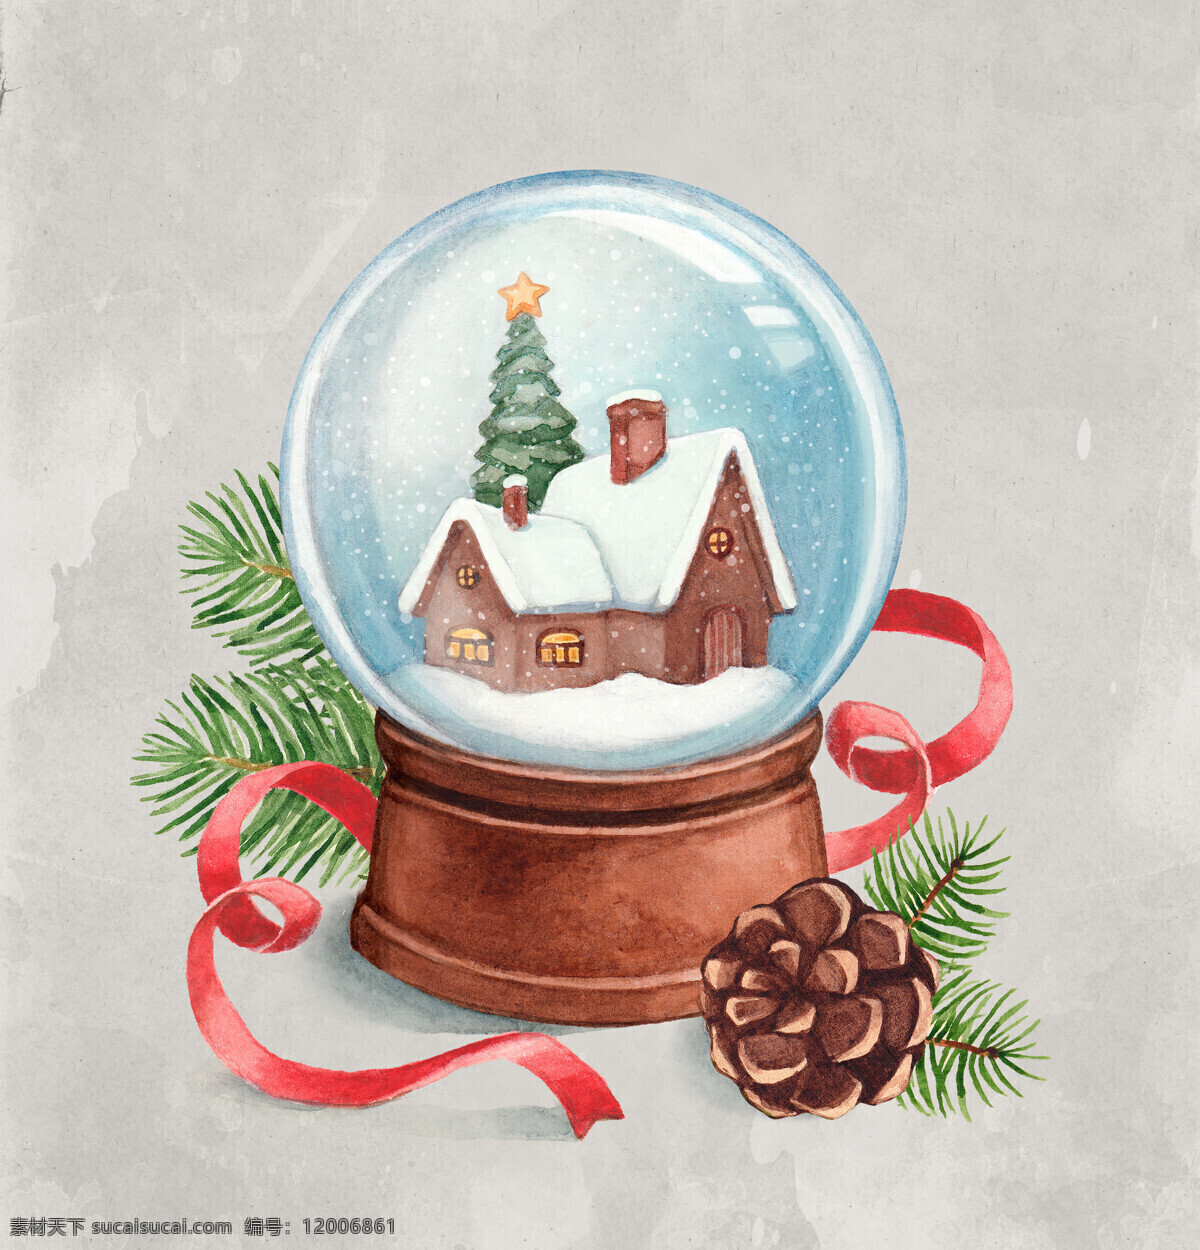 背景 绘画 绘画书法 节日 平安夜 圣诞节 圣诞树 圣诞 水晶球 设计素材 模板下载 圣诞水晶球 雪花 特效 下雪特效 手绘 文化艺术